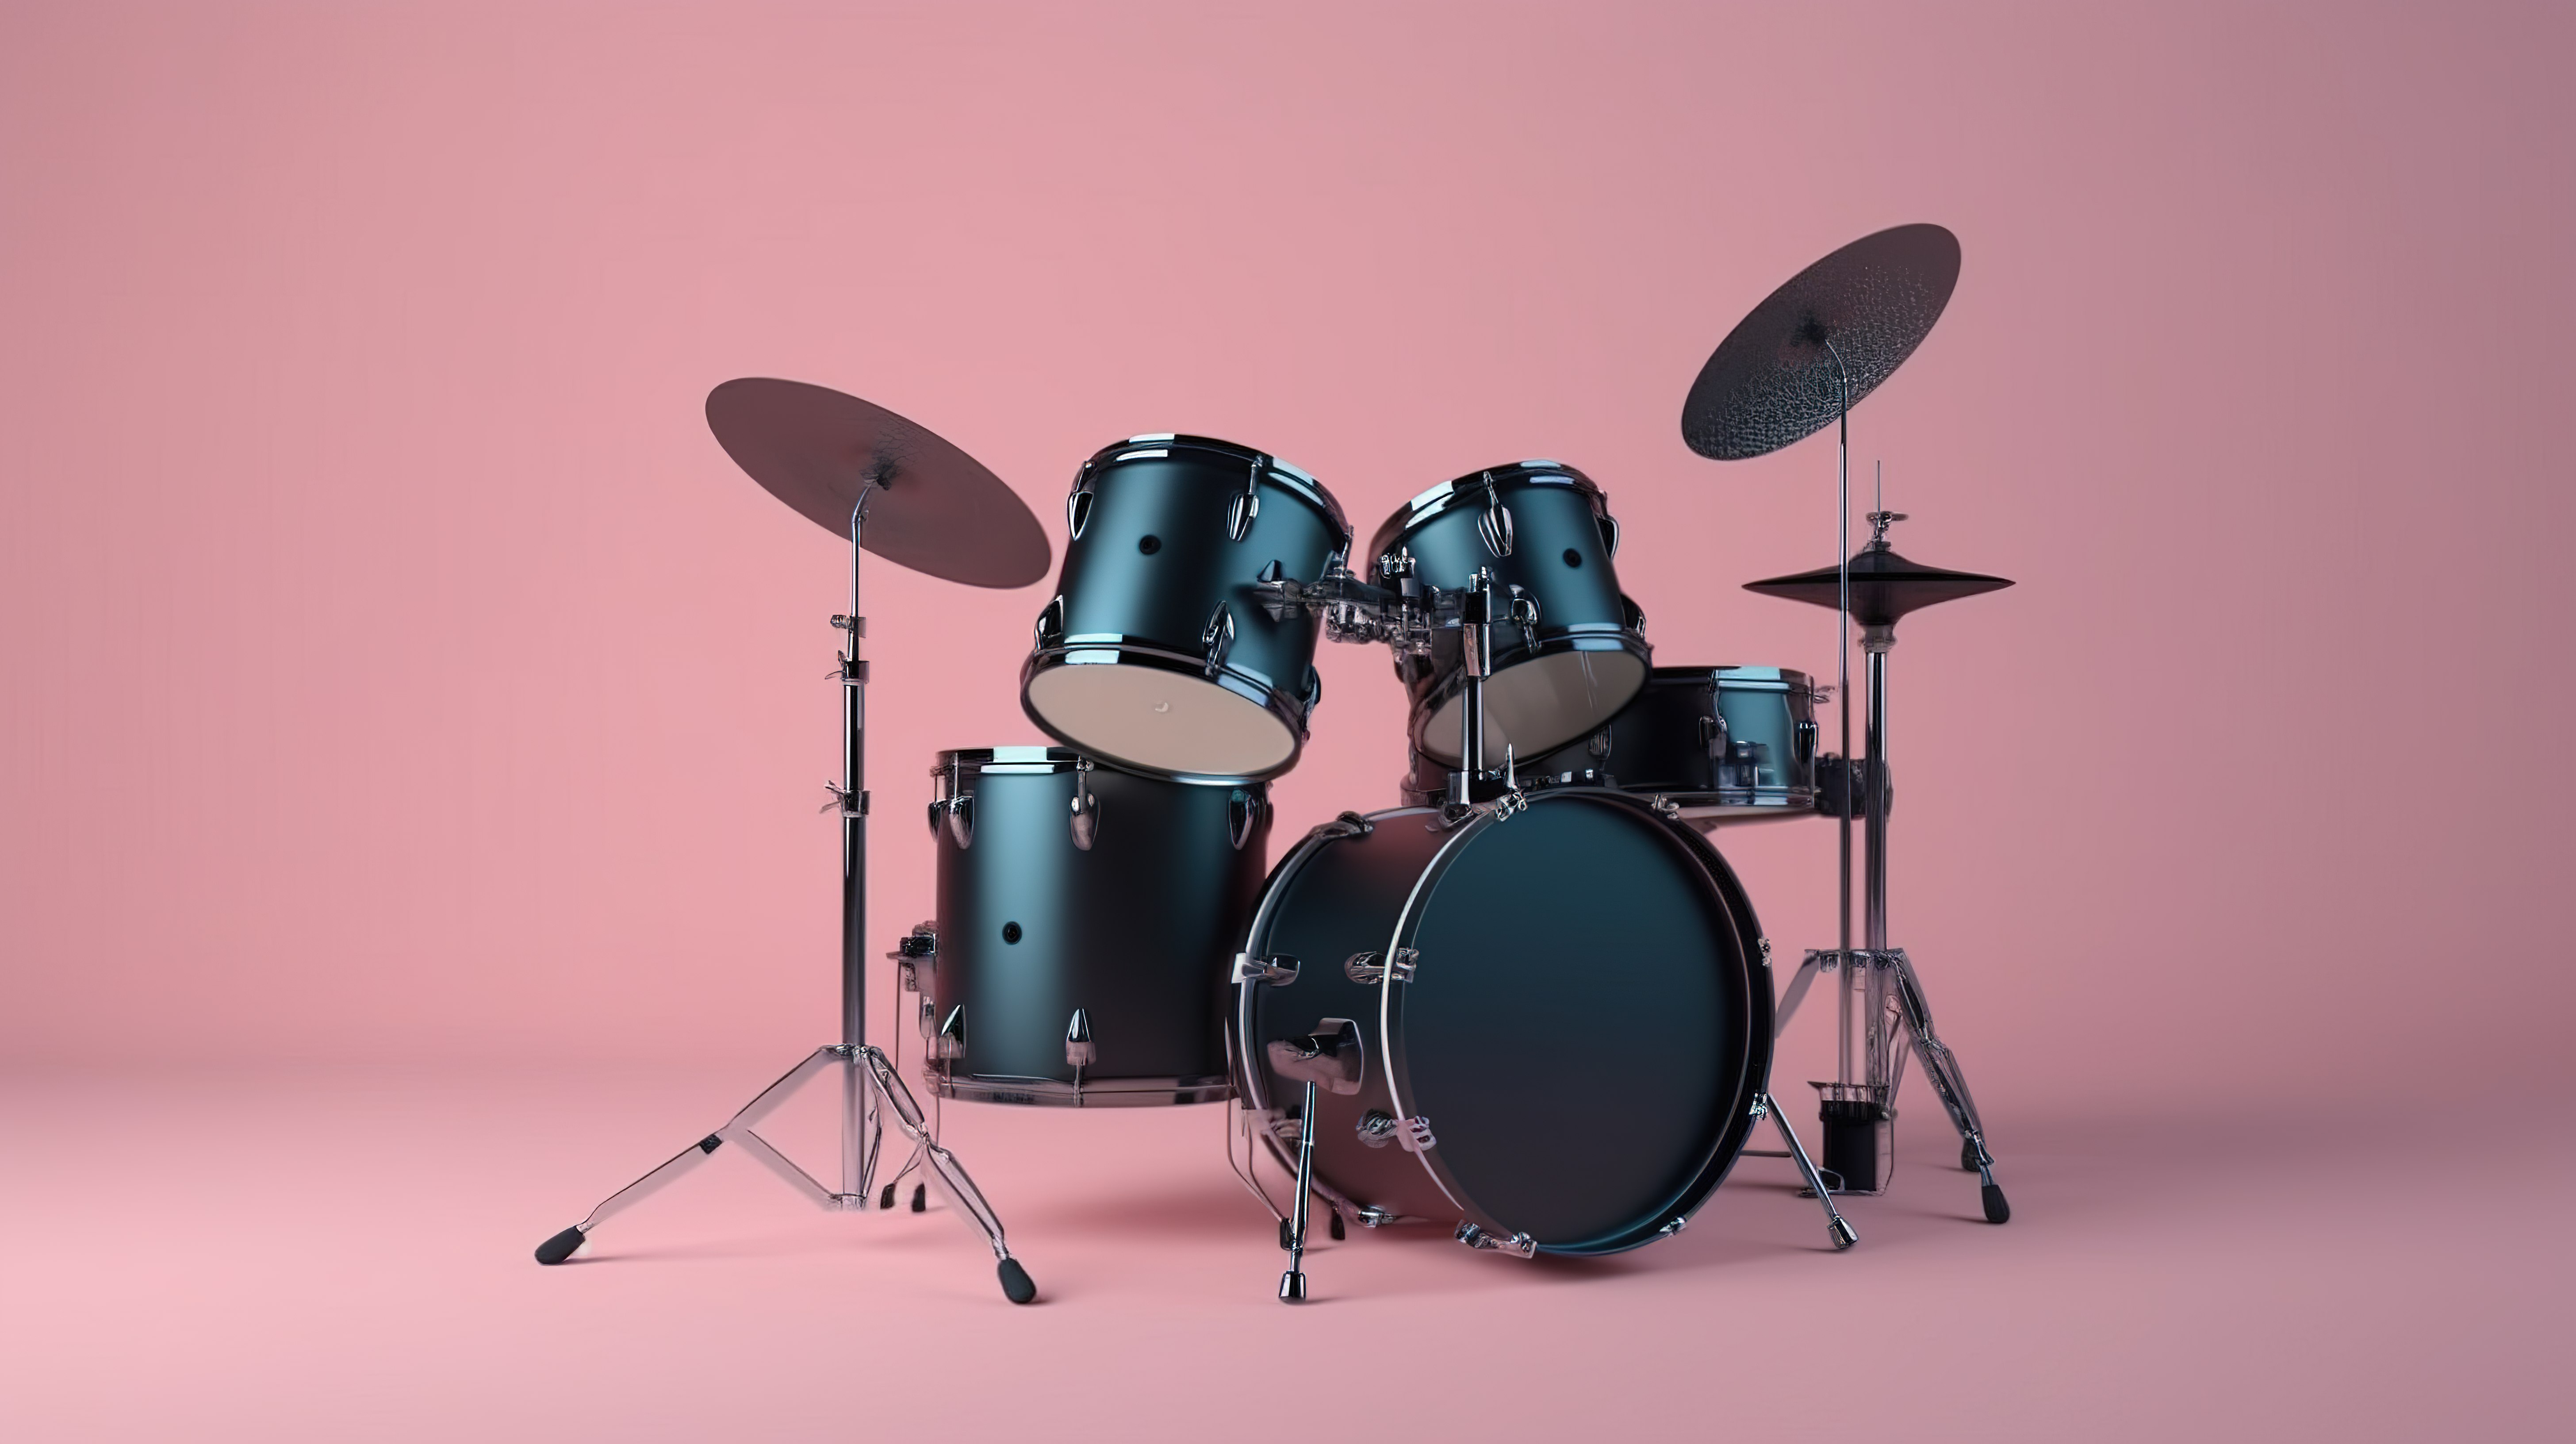 粉红色背景展示 3D 渲染的专业摇滚鼓套件，采用时尚的黑色和蓝色图片